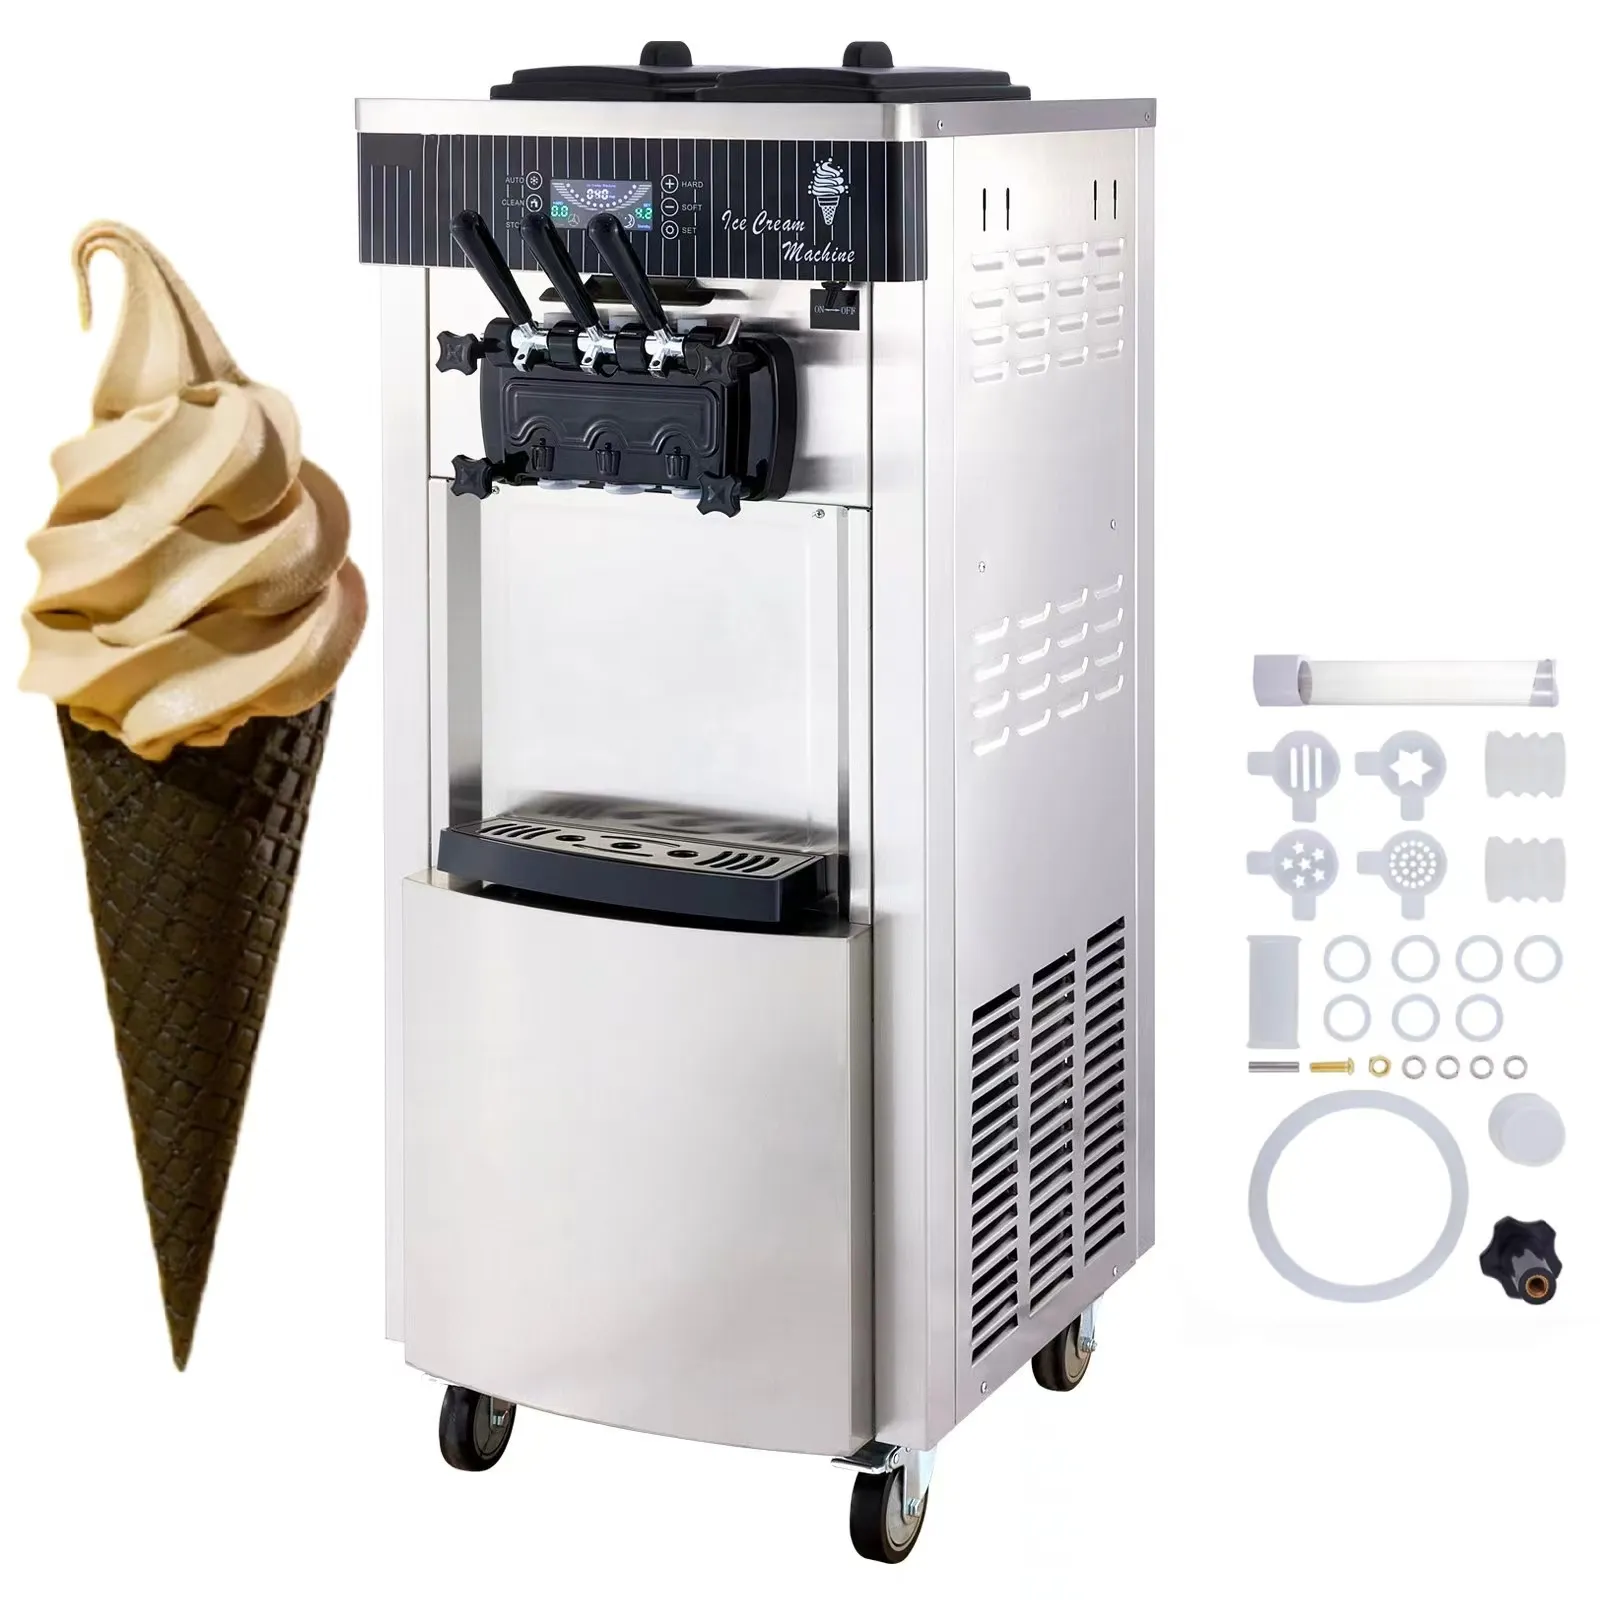 เครื่องทำไอศกรีม YKF-8228แบบนิ่ม2200W เครื่องทำไอศกรีมแบบยืนพร้อมหน้าจอ LED ทำความสะอาดอัตโนมัติ